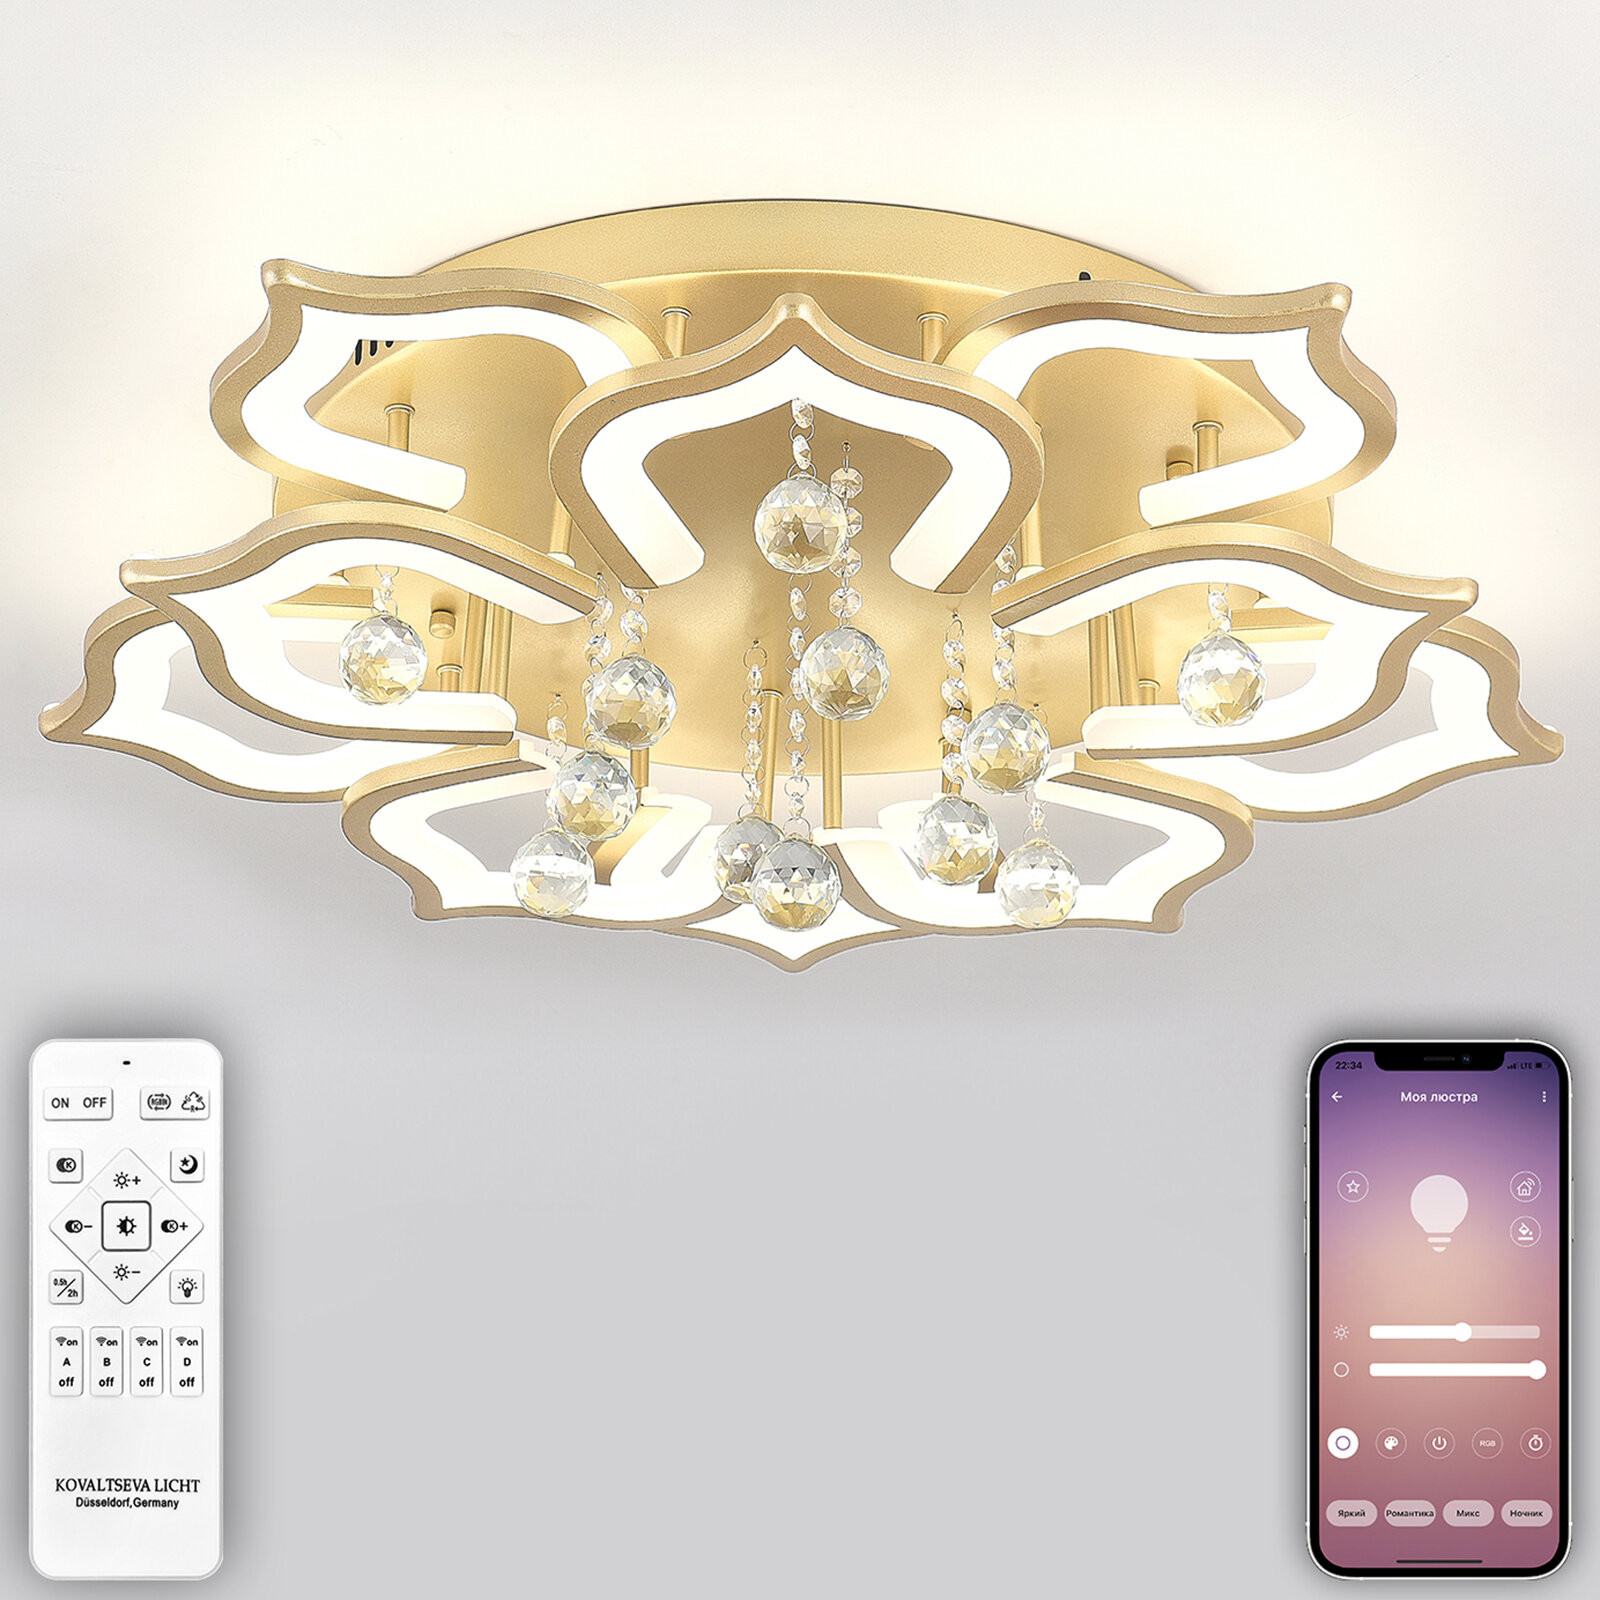 Светодиодный светильник люстра INNOVATION STYLE 83053 с пультом ДУ, моб. приложением 160W, золотой, LED